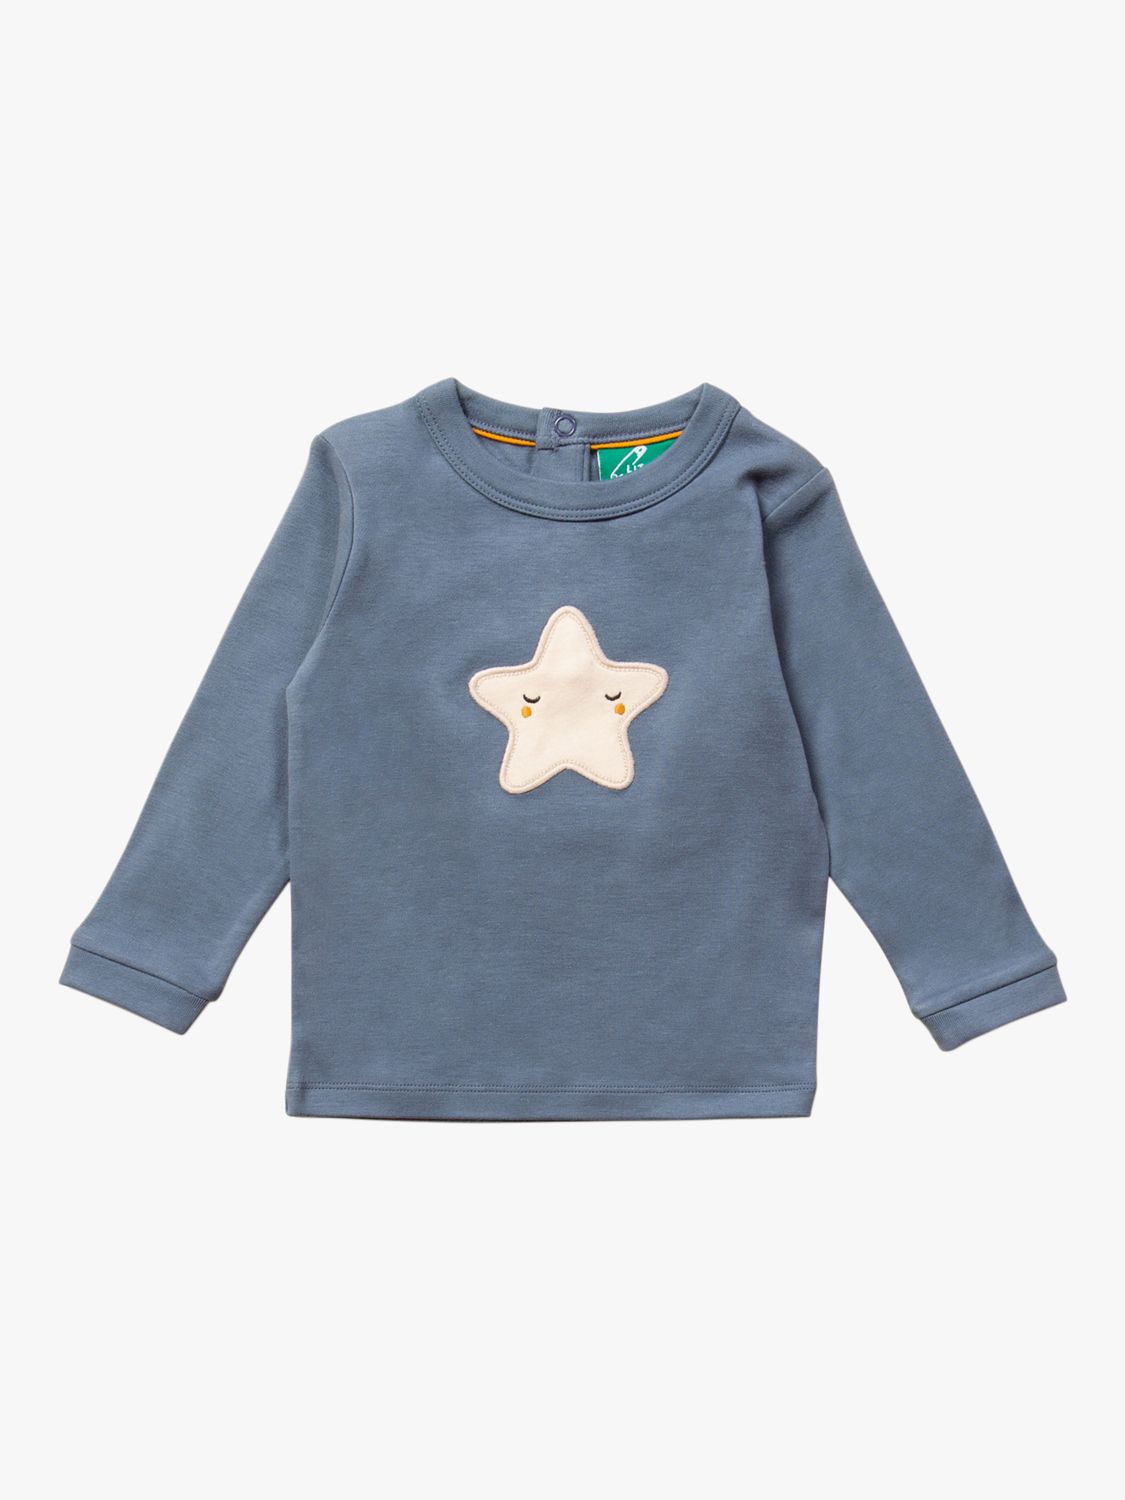 Детская футболка с длинными рукавами и аппликацией Падающая звезда Little Green Radicals, синий